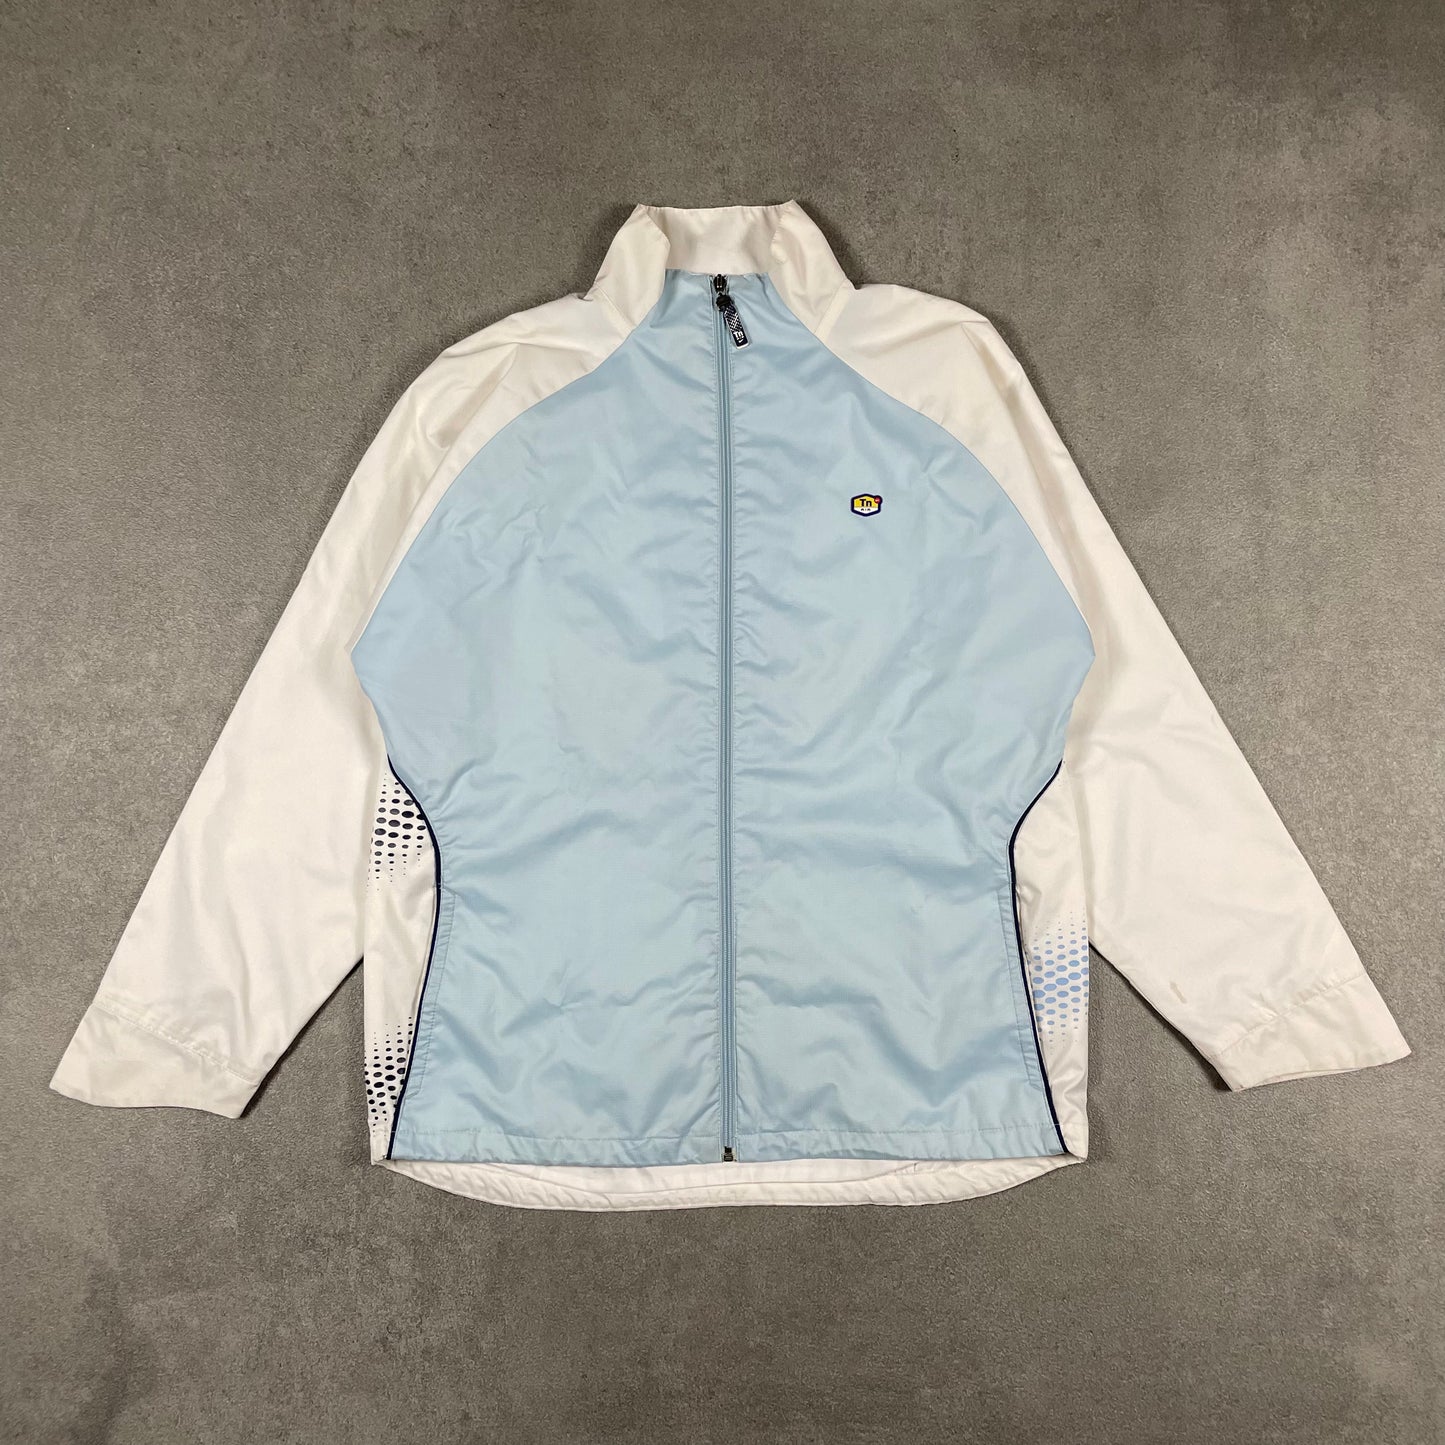 Nike Tn vintage Jacket (M)